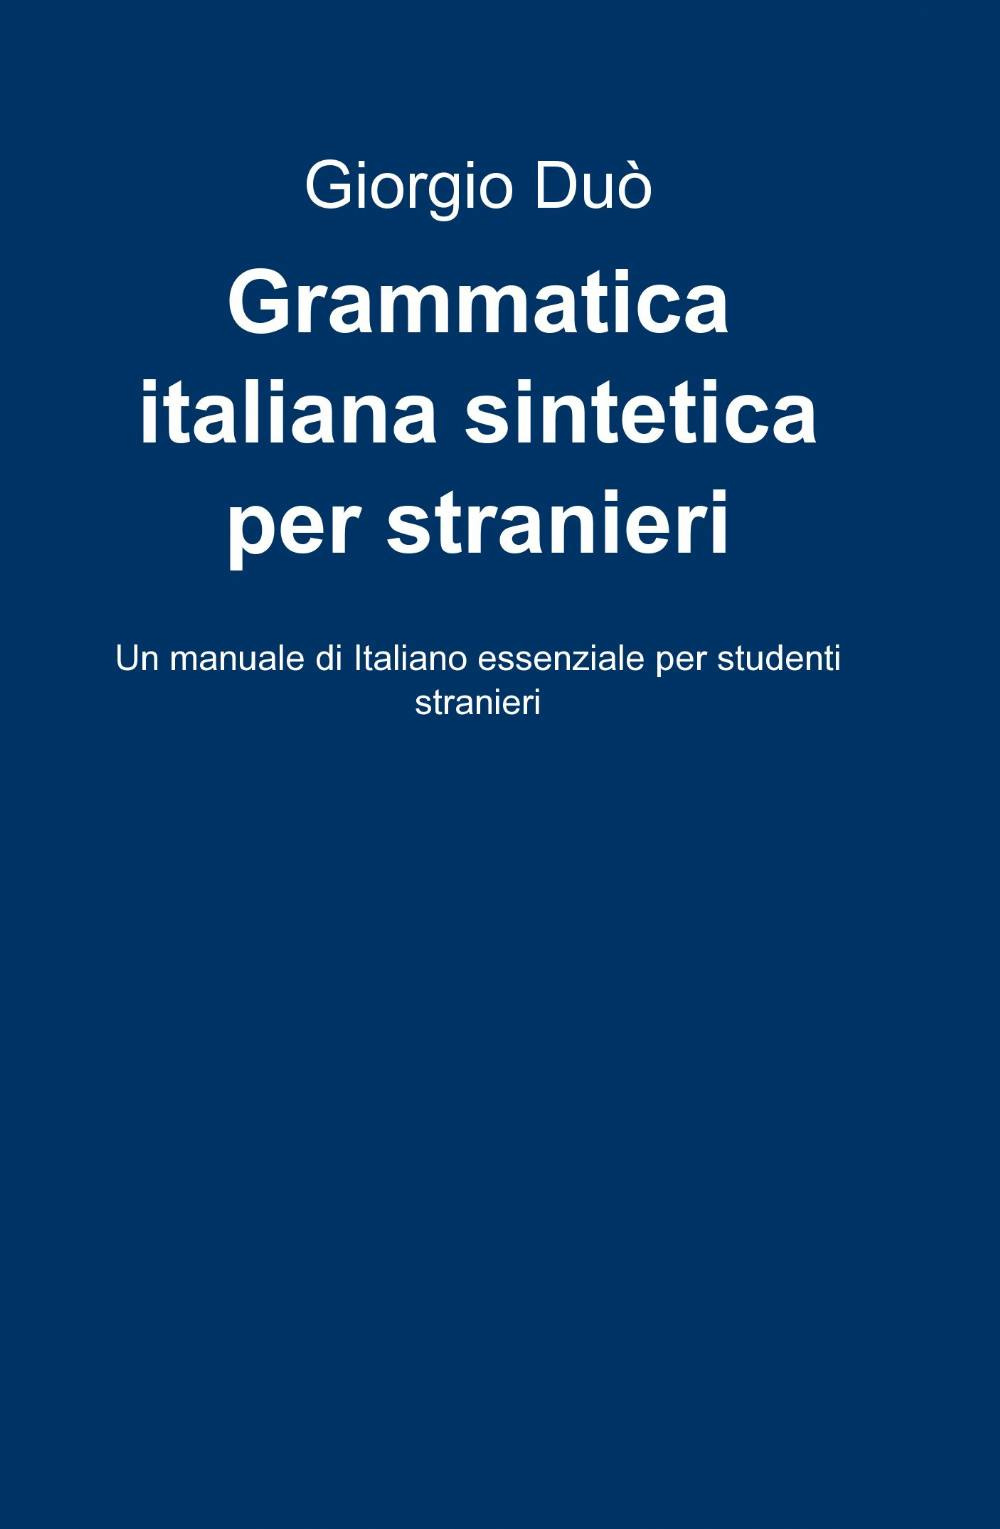 Image of Grammatica italiana sintetica per stranieri